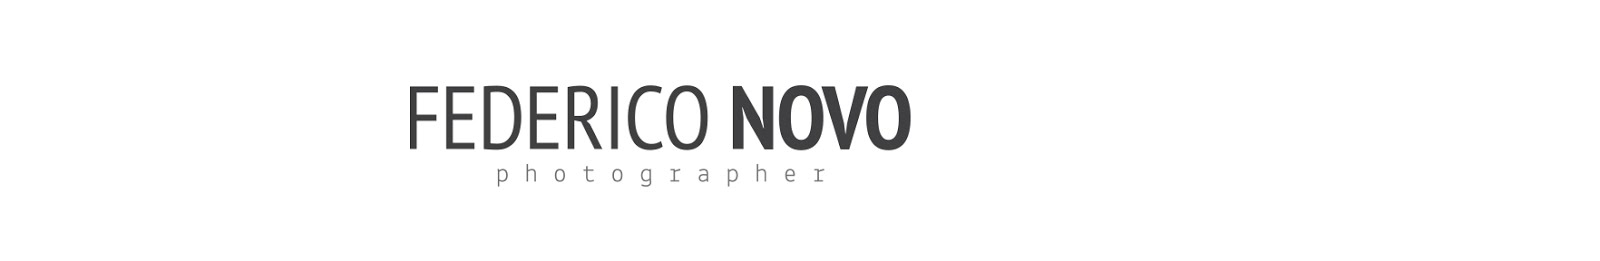 FEDERICO NOVO /  PHOTOGRAPHER